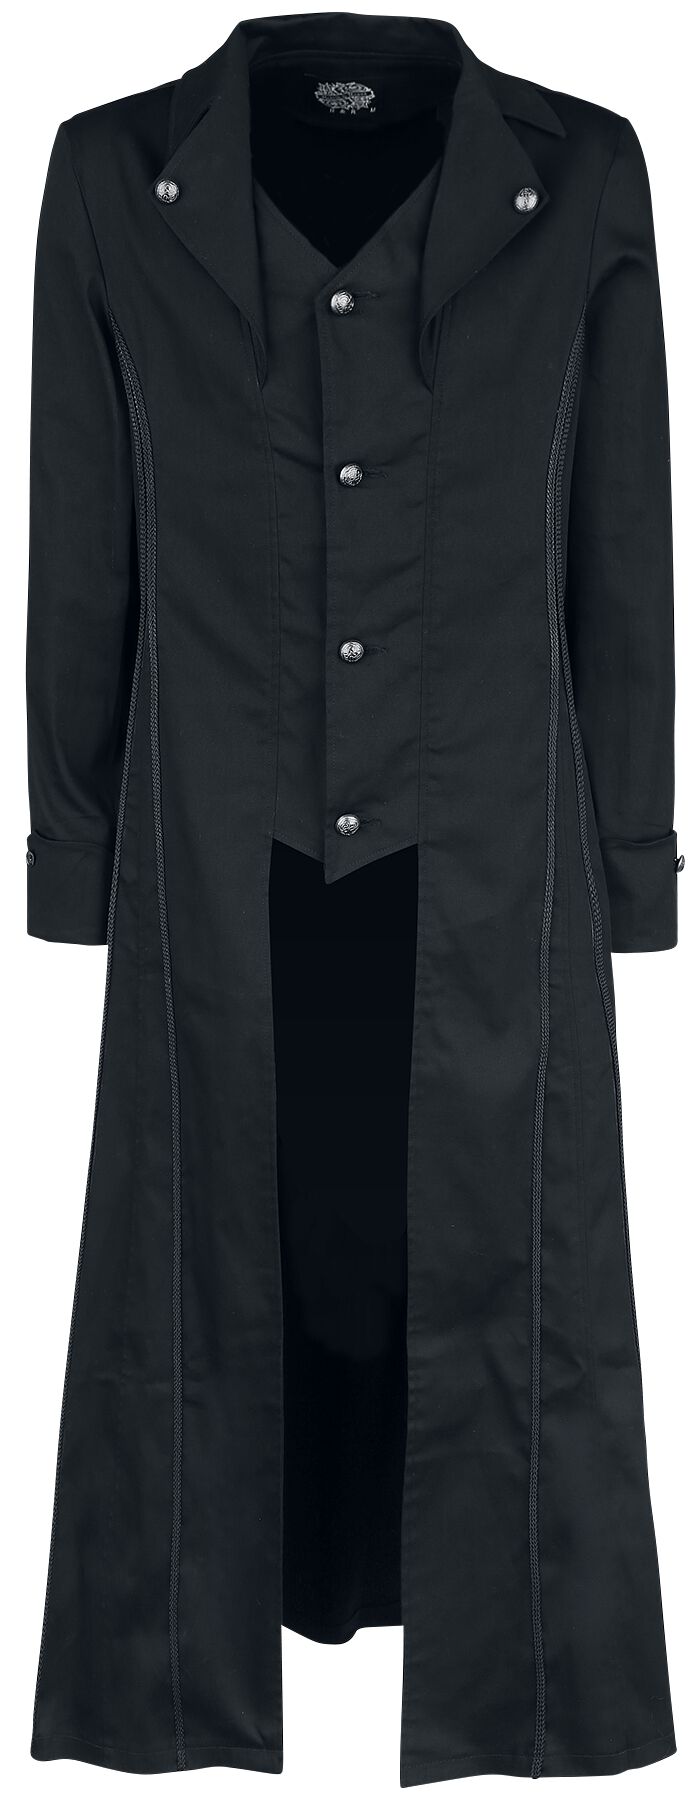 H&R London - Gothic Militärmantel - Black Classic Coat - S bis XXL - für Männer - Größe XL - schwarz